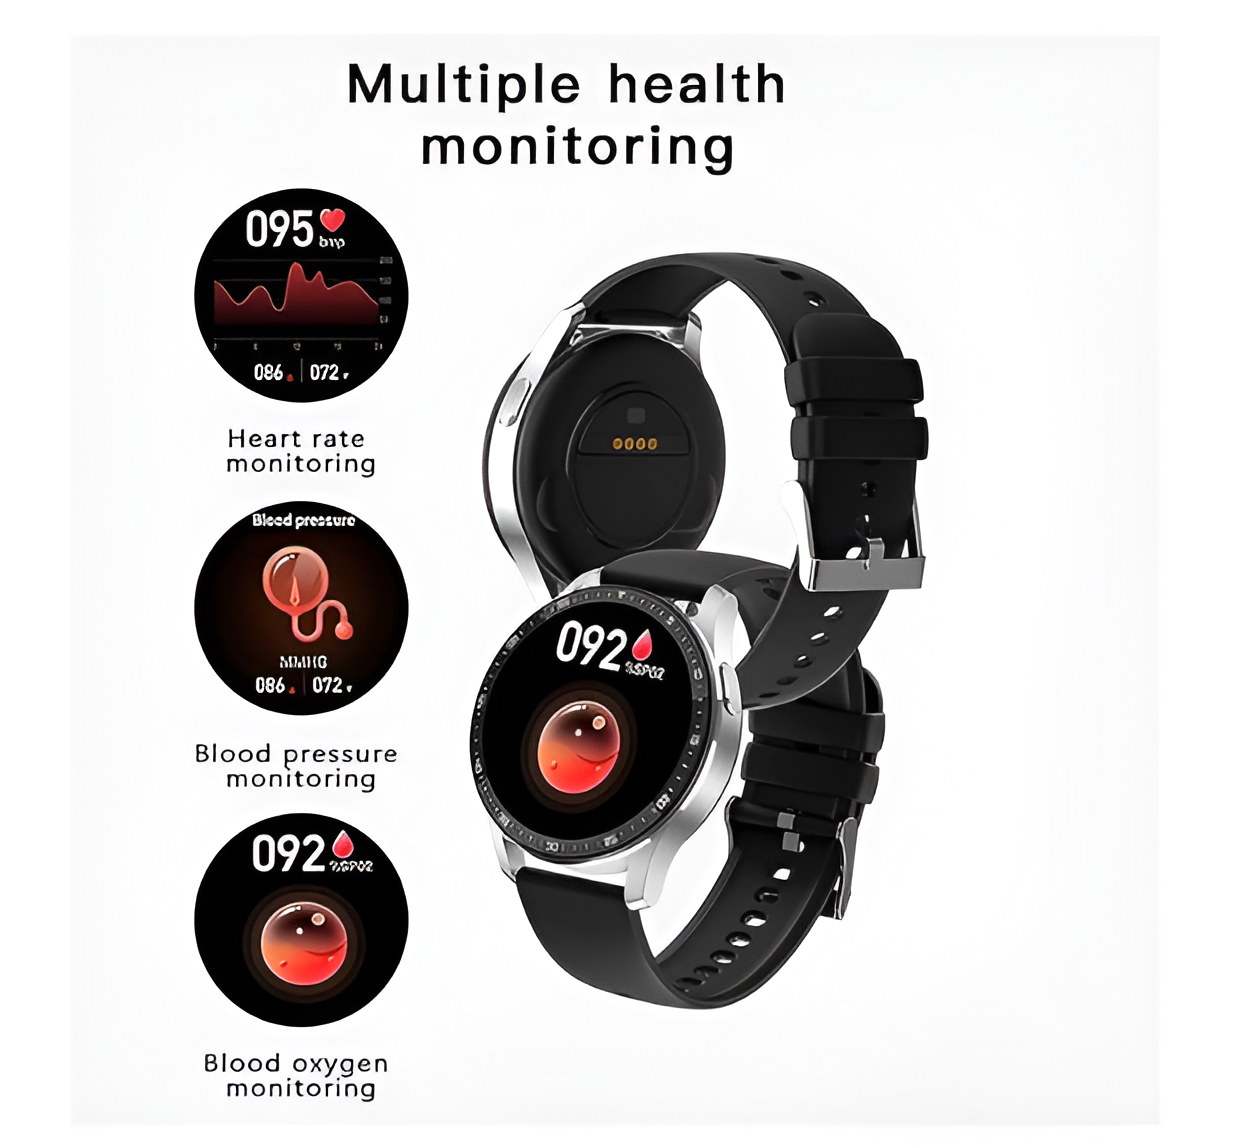 Smartwatch con auriculares - Reloj inteligente con audifonos